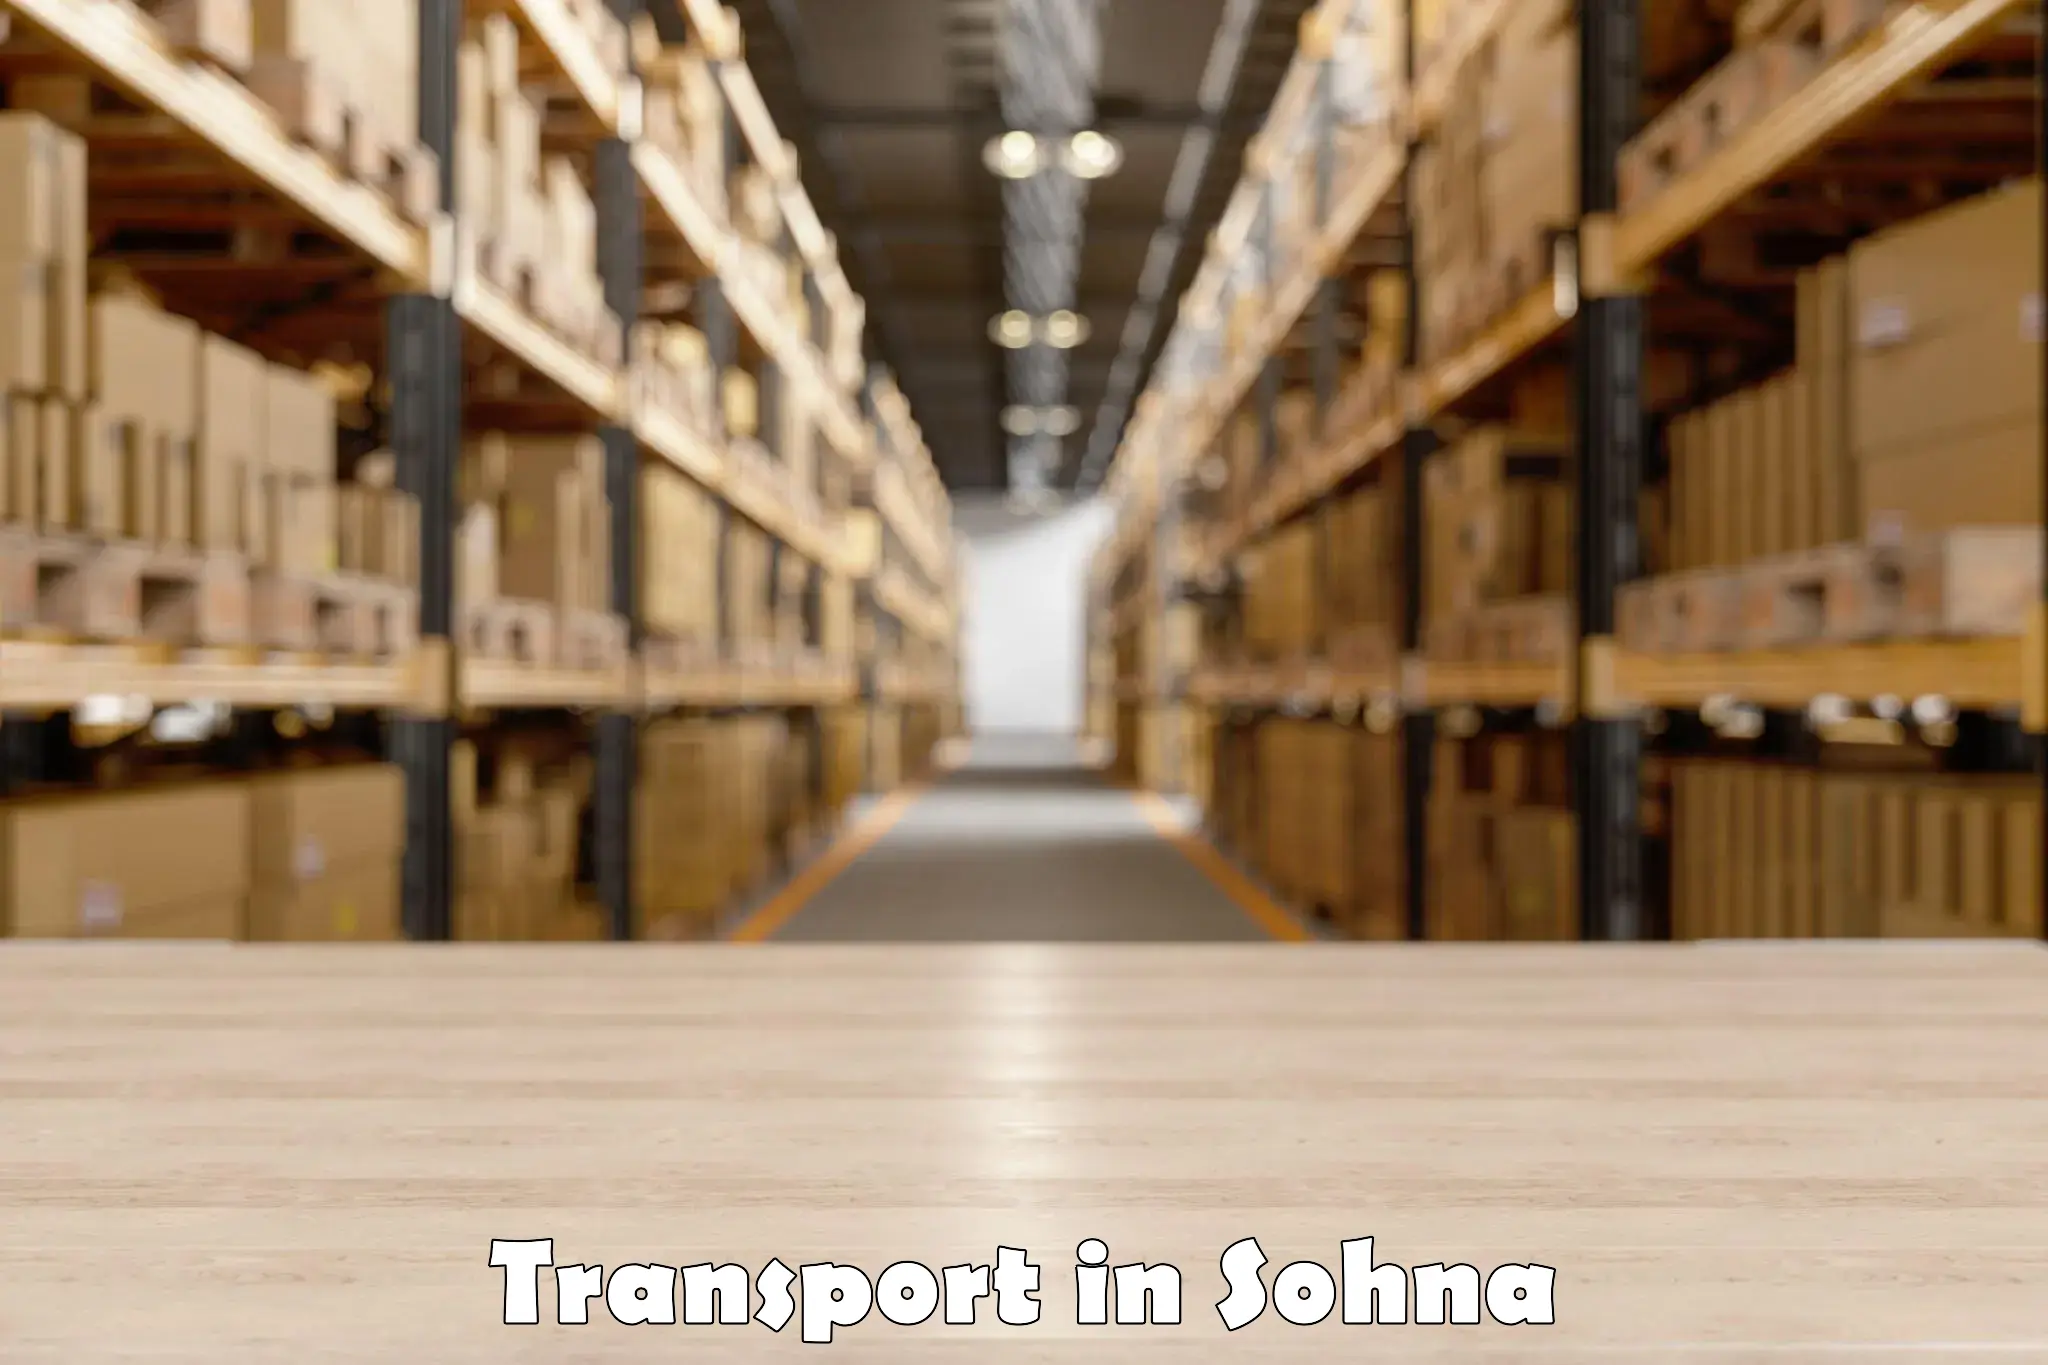 Transport in sharing in Sohna